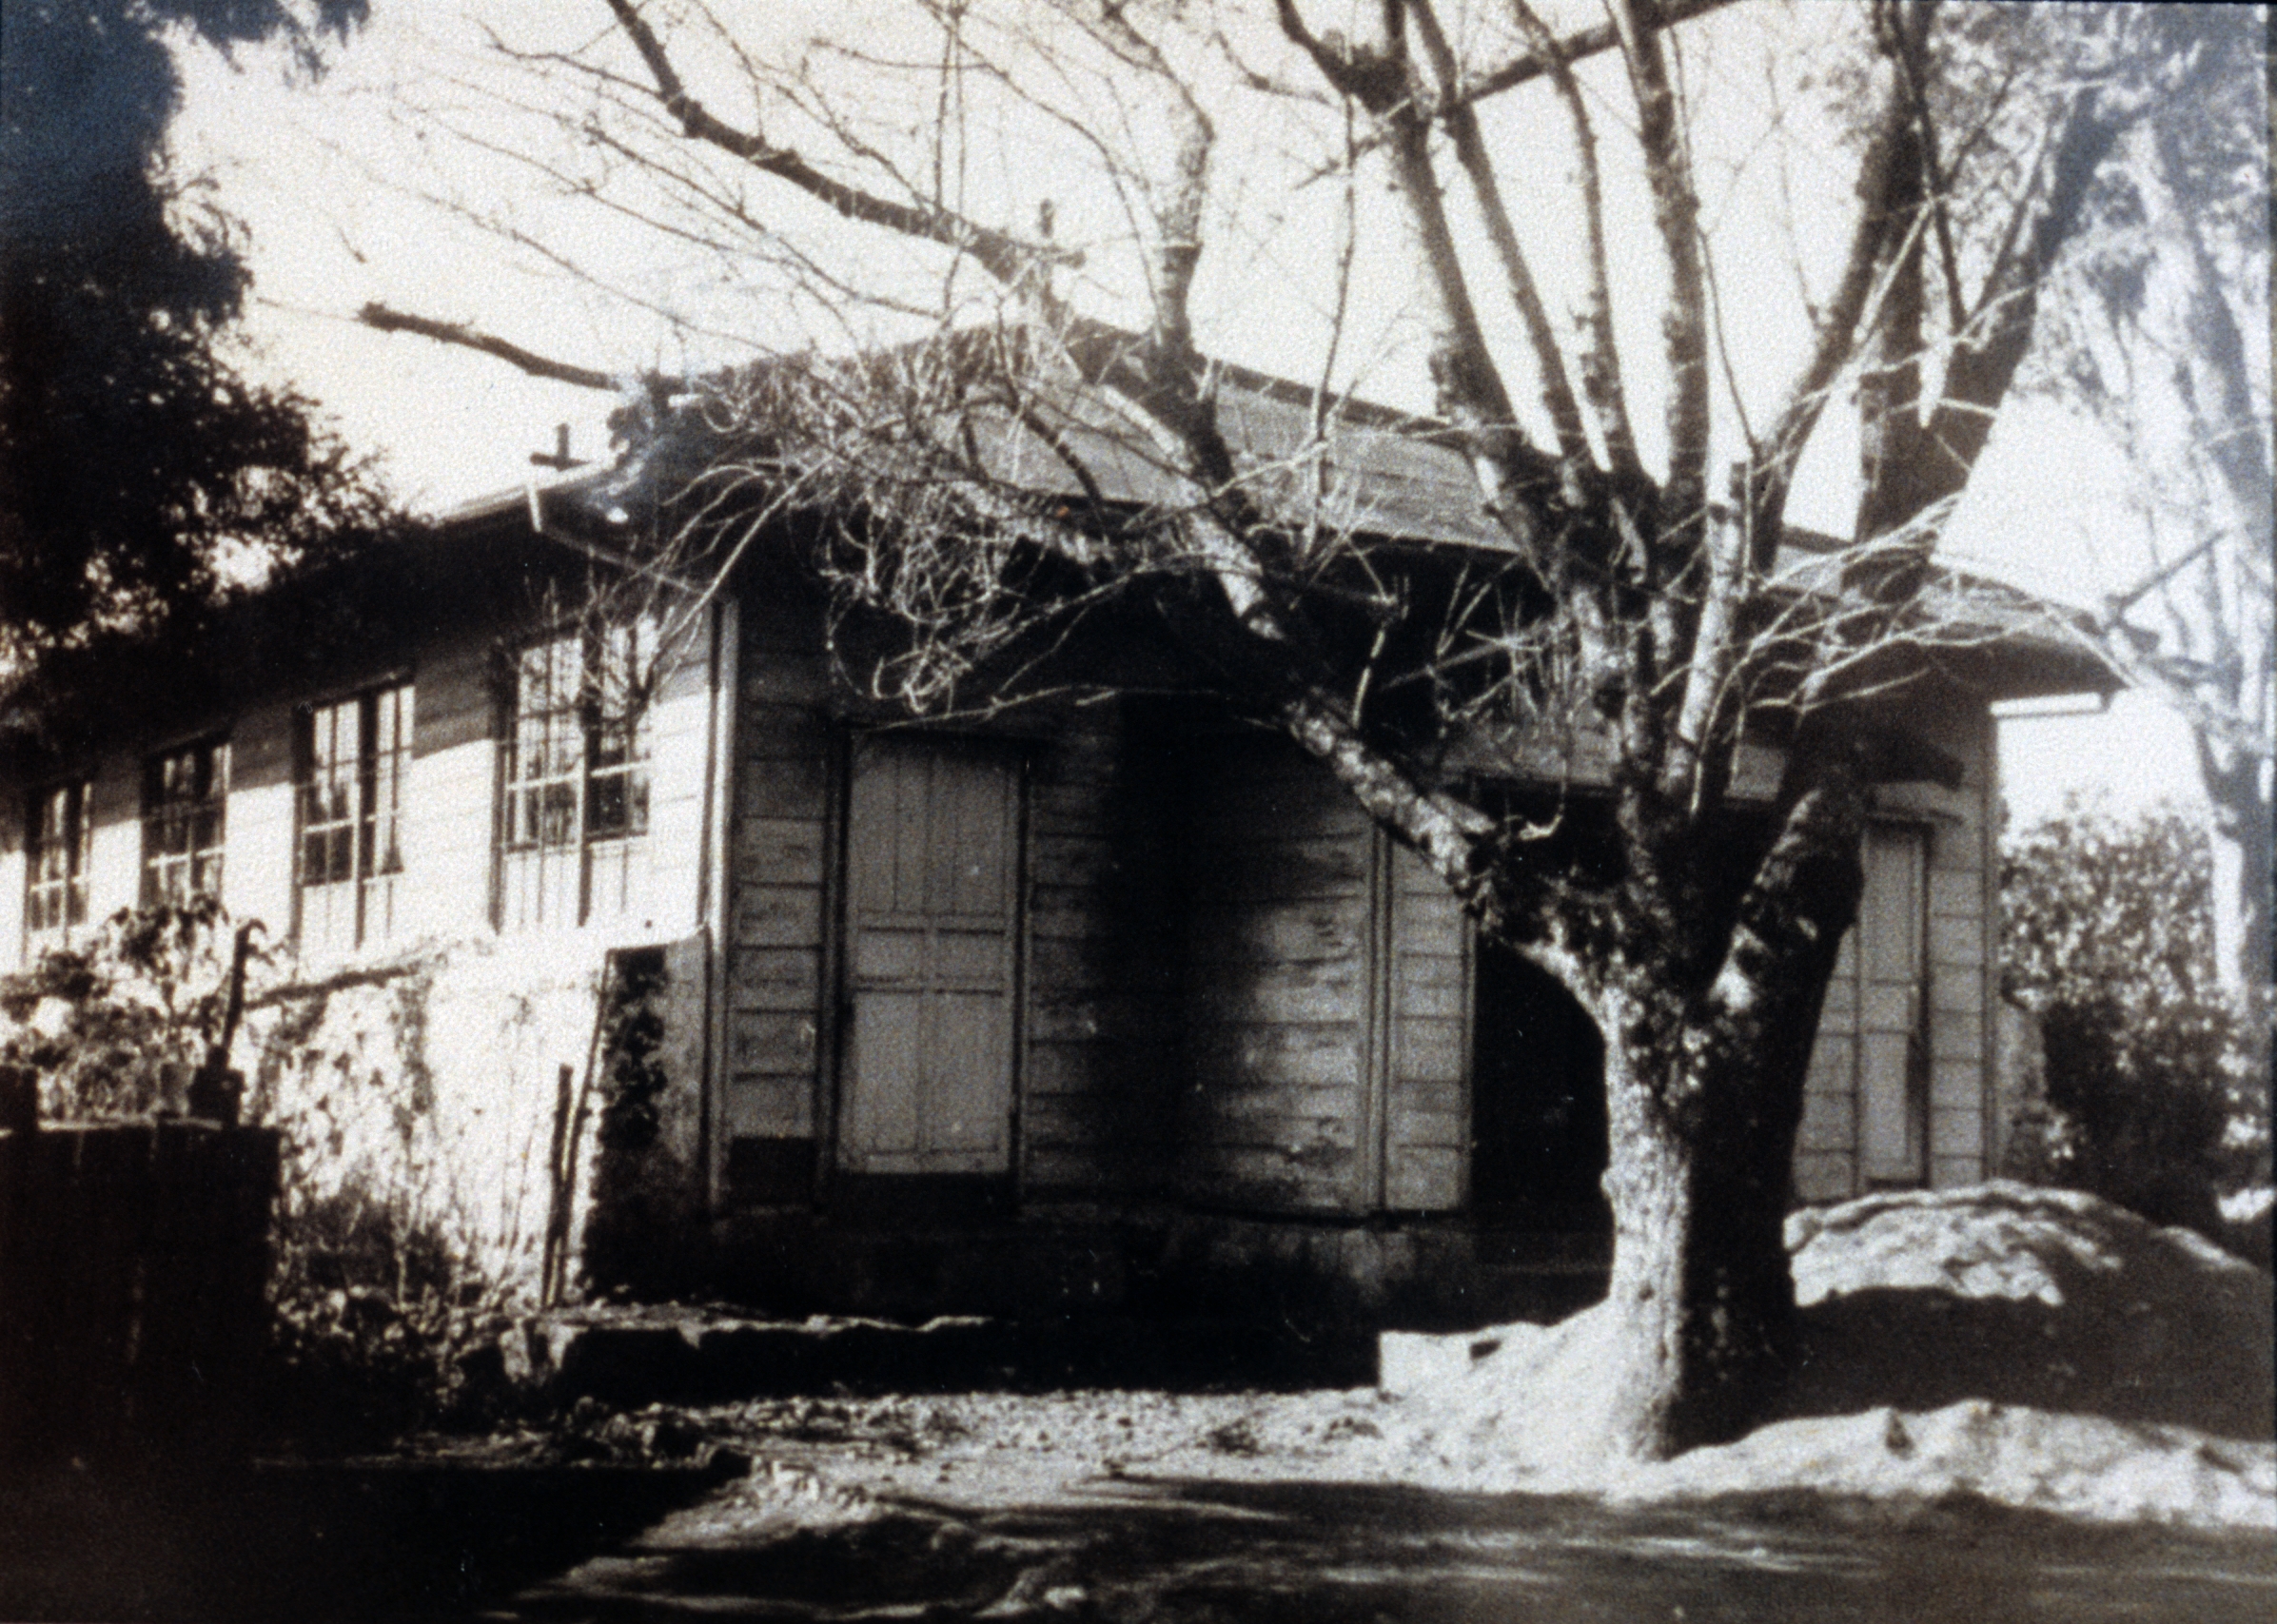 성신대학(1947~1959) (1)의 관련된 이미지 입니다.